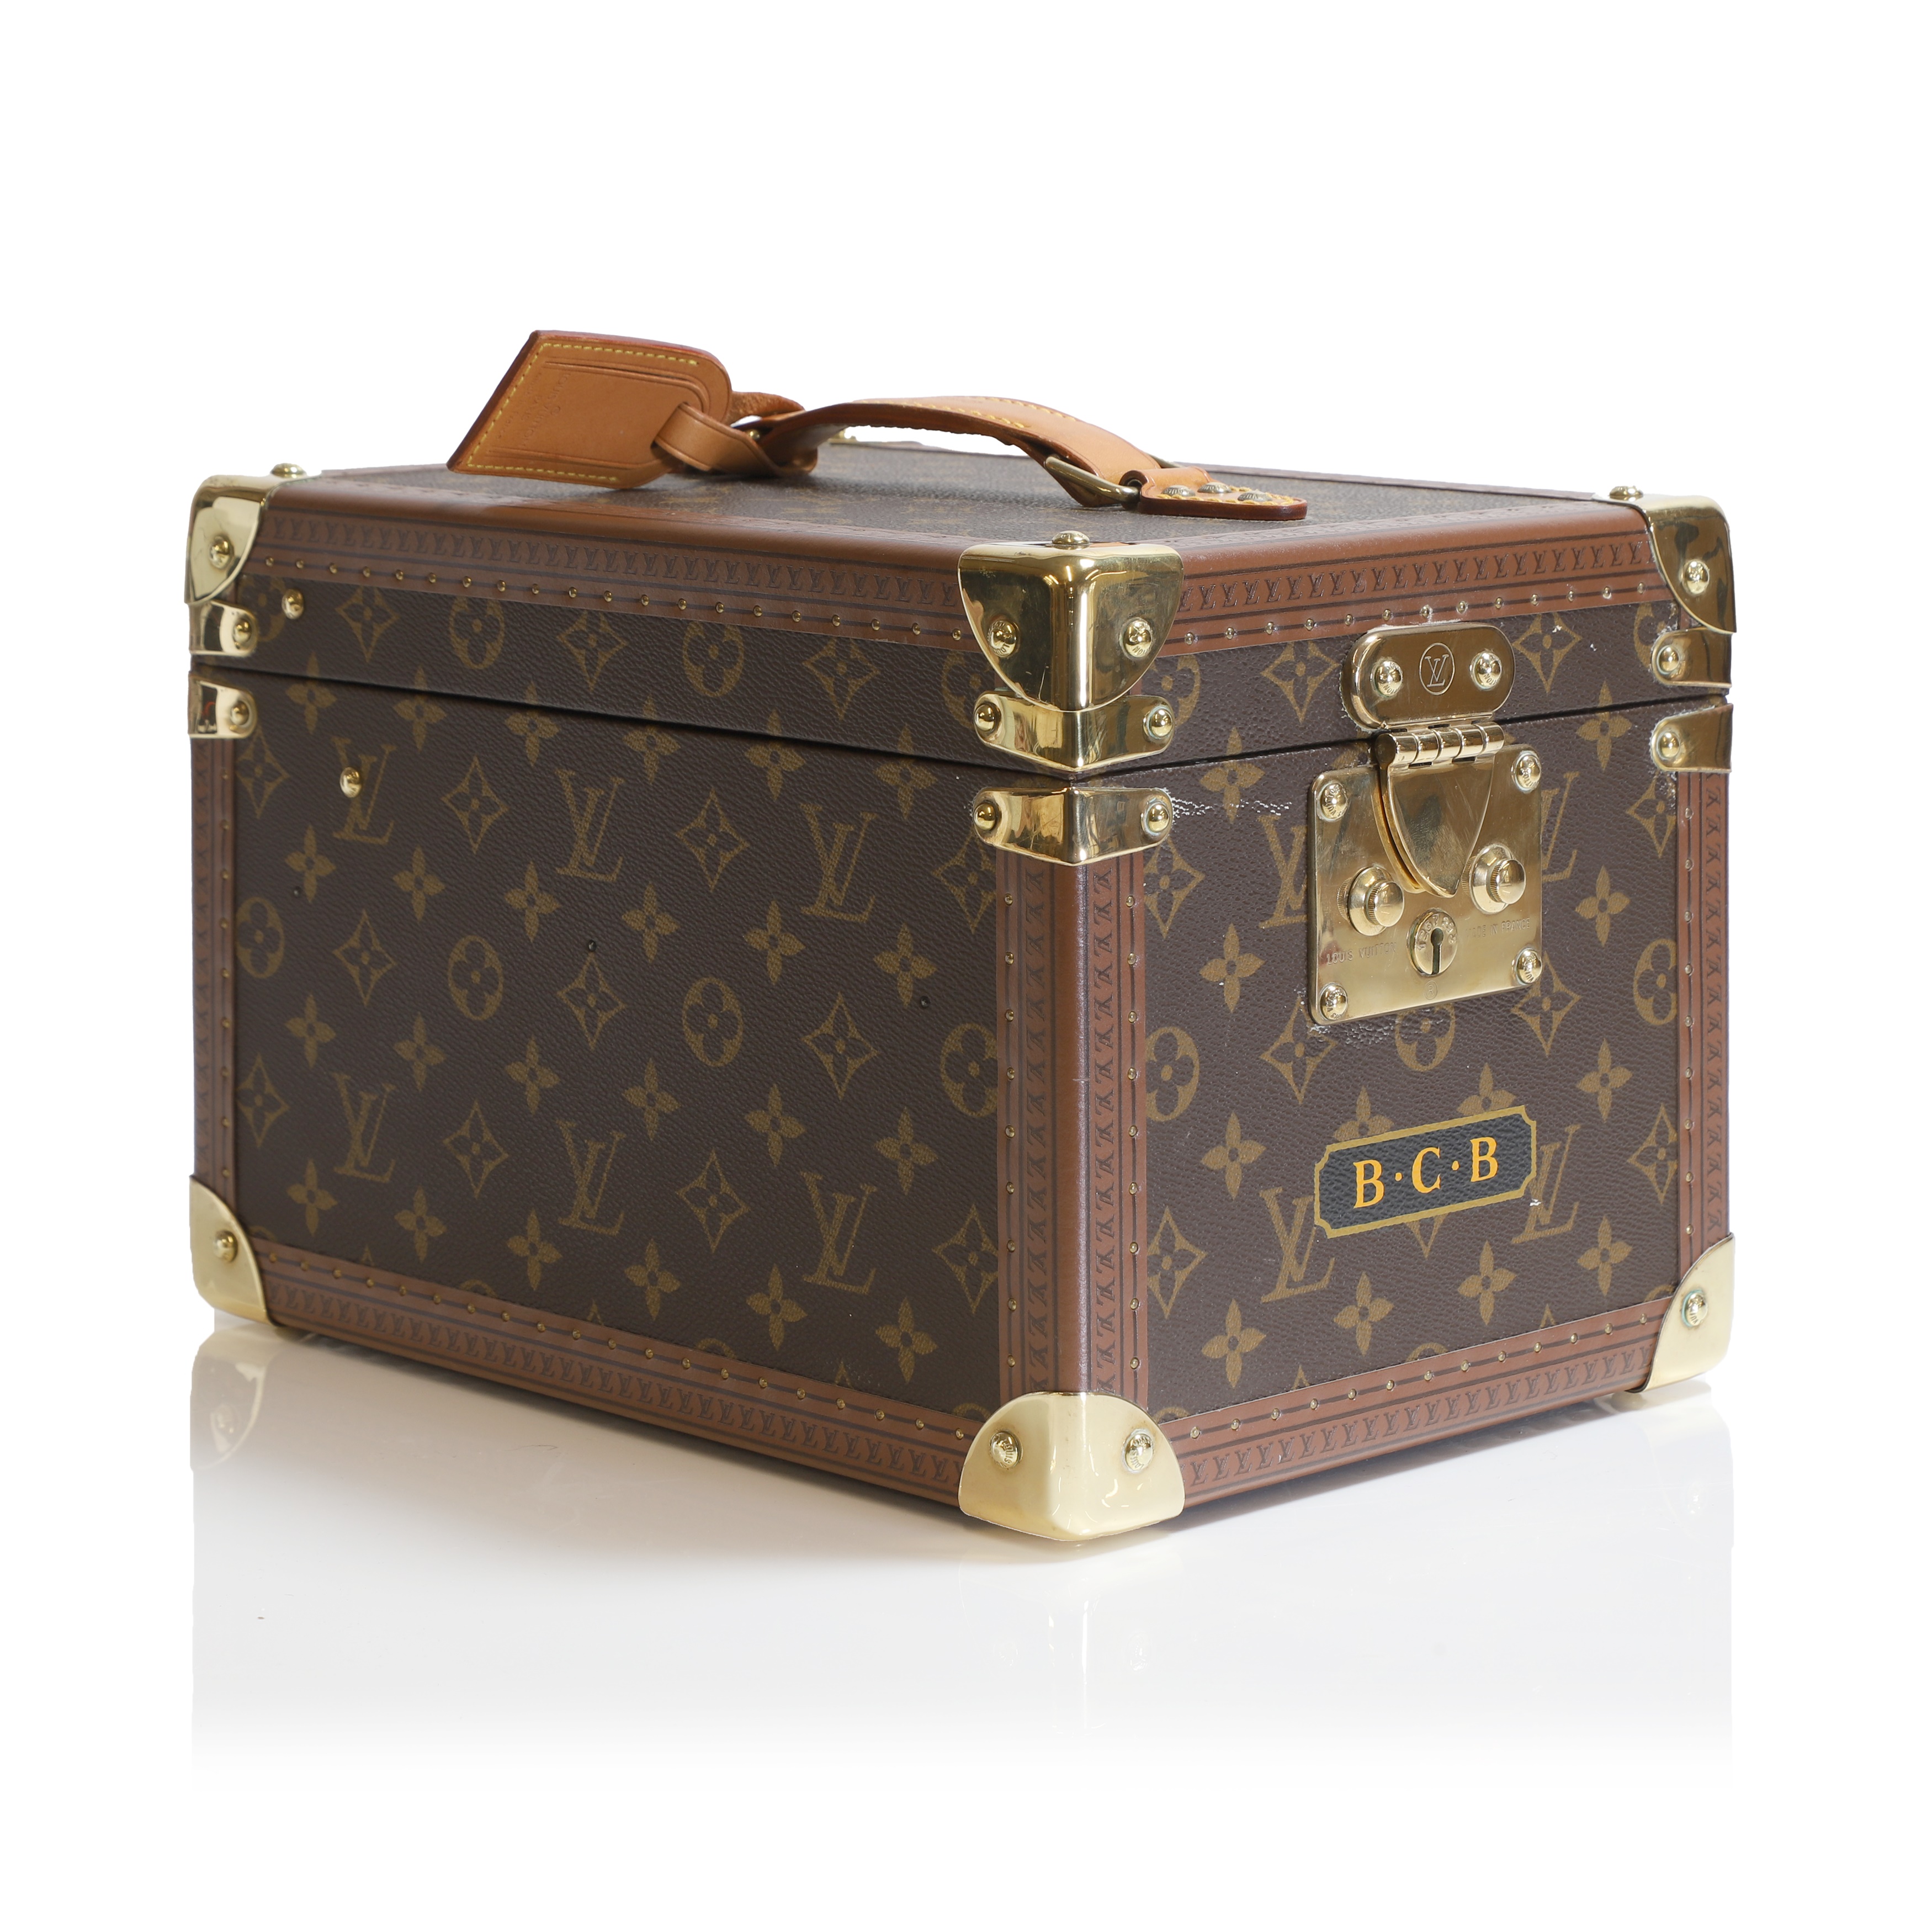 A Louis Vuitton monogrammed canvas bottle box (£1,500-2,000)